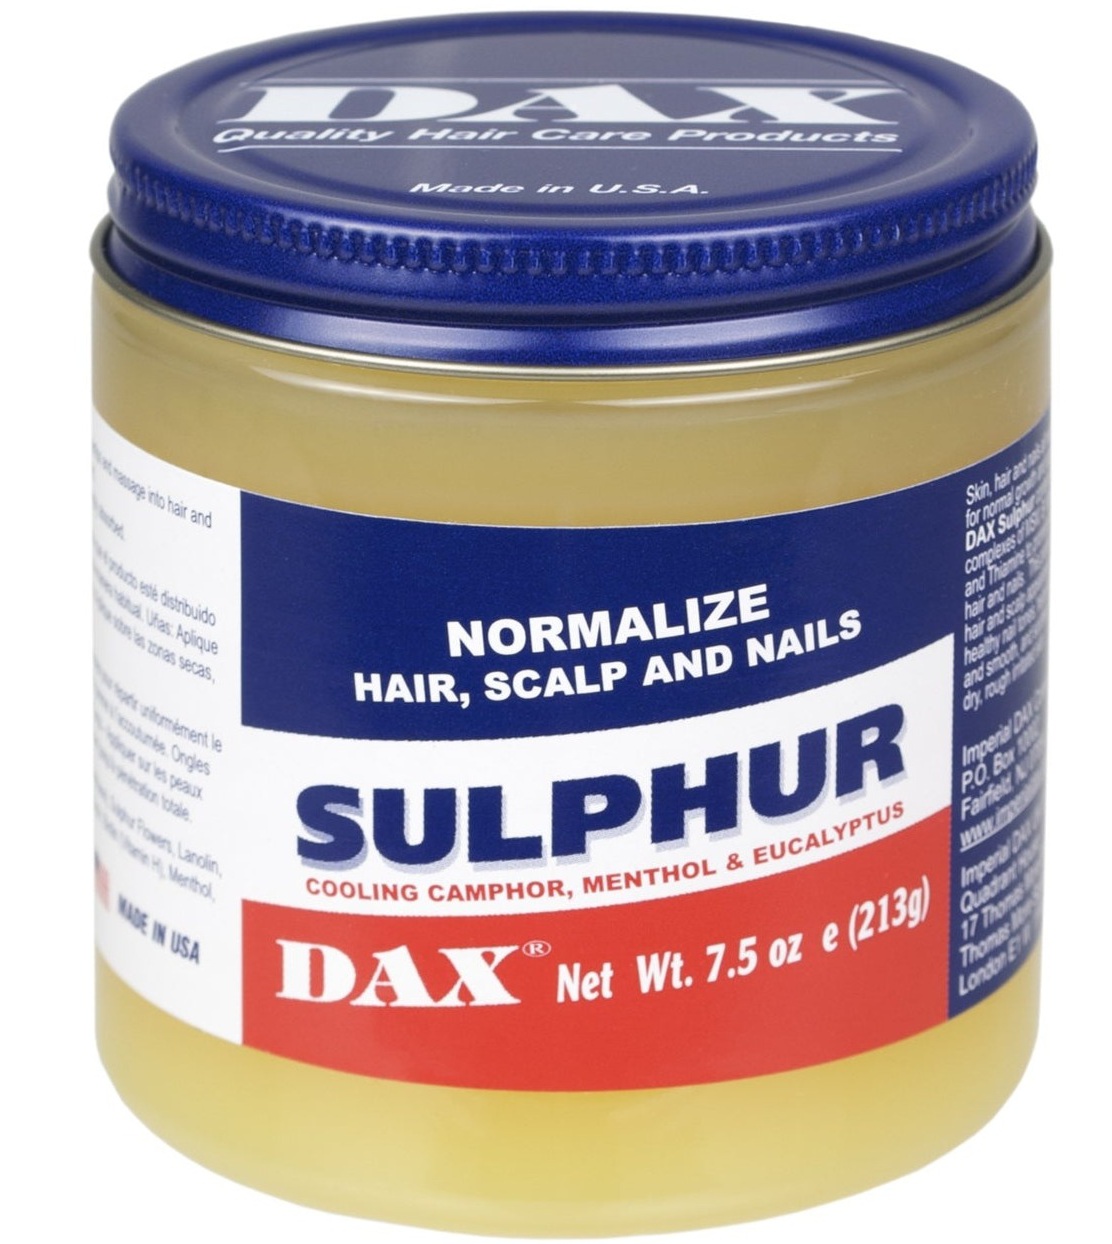 DAX Sulphur